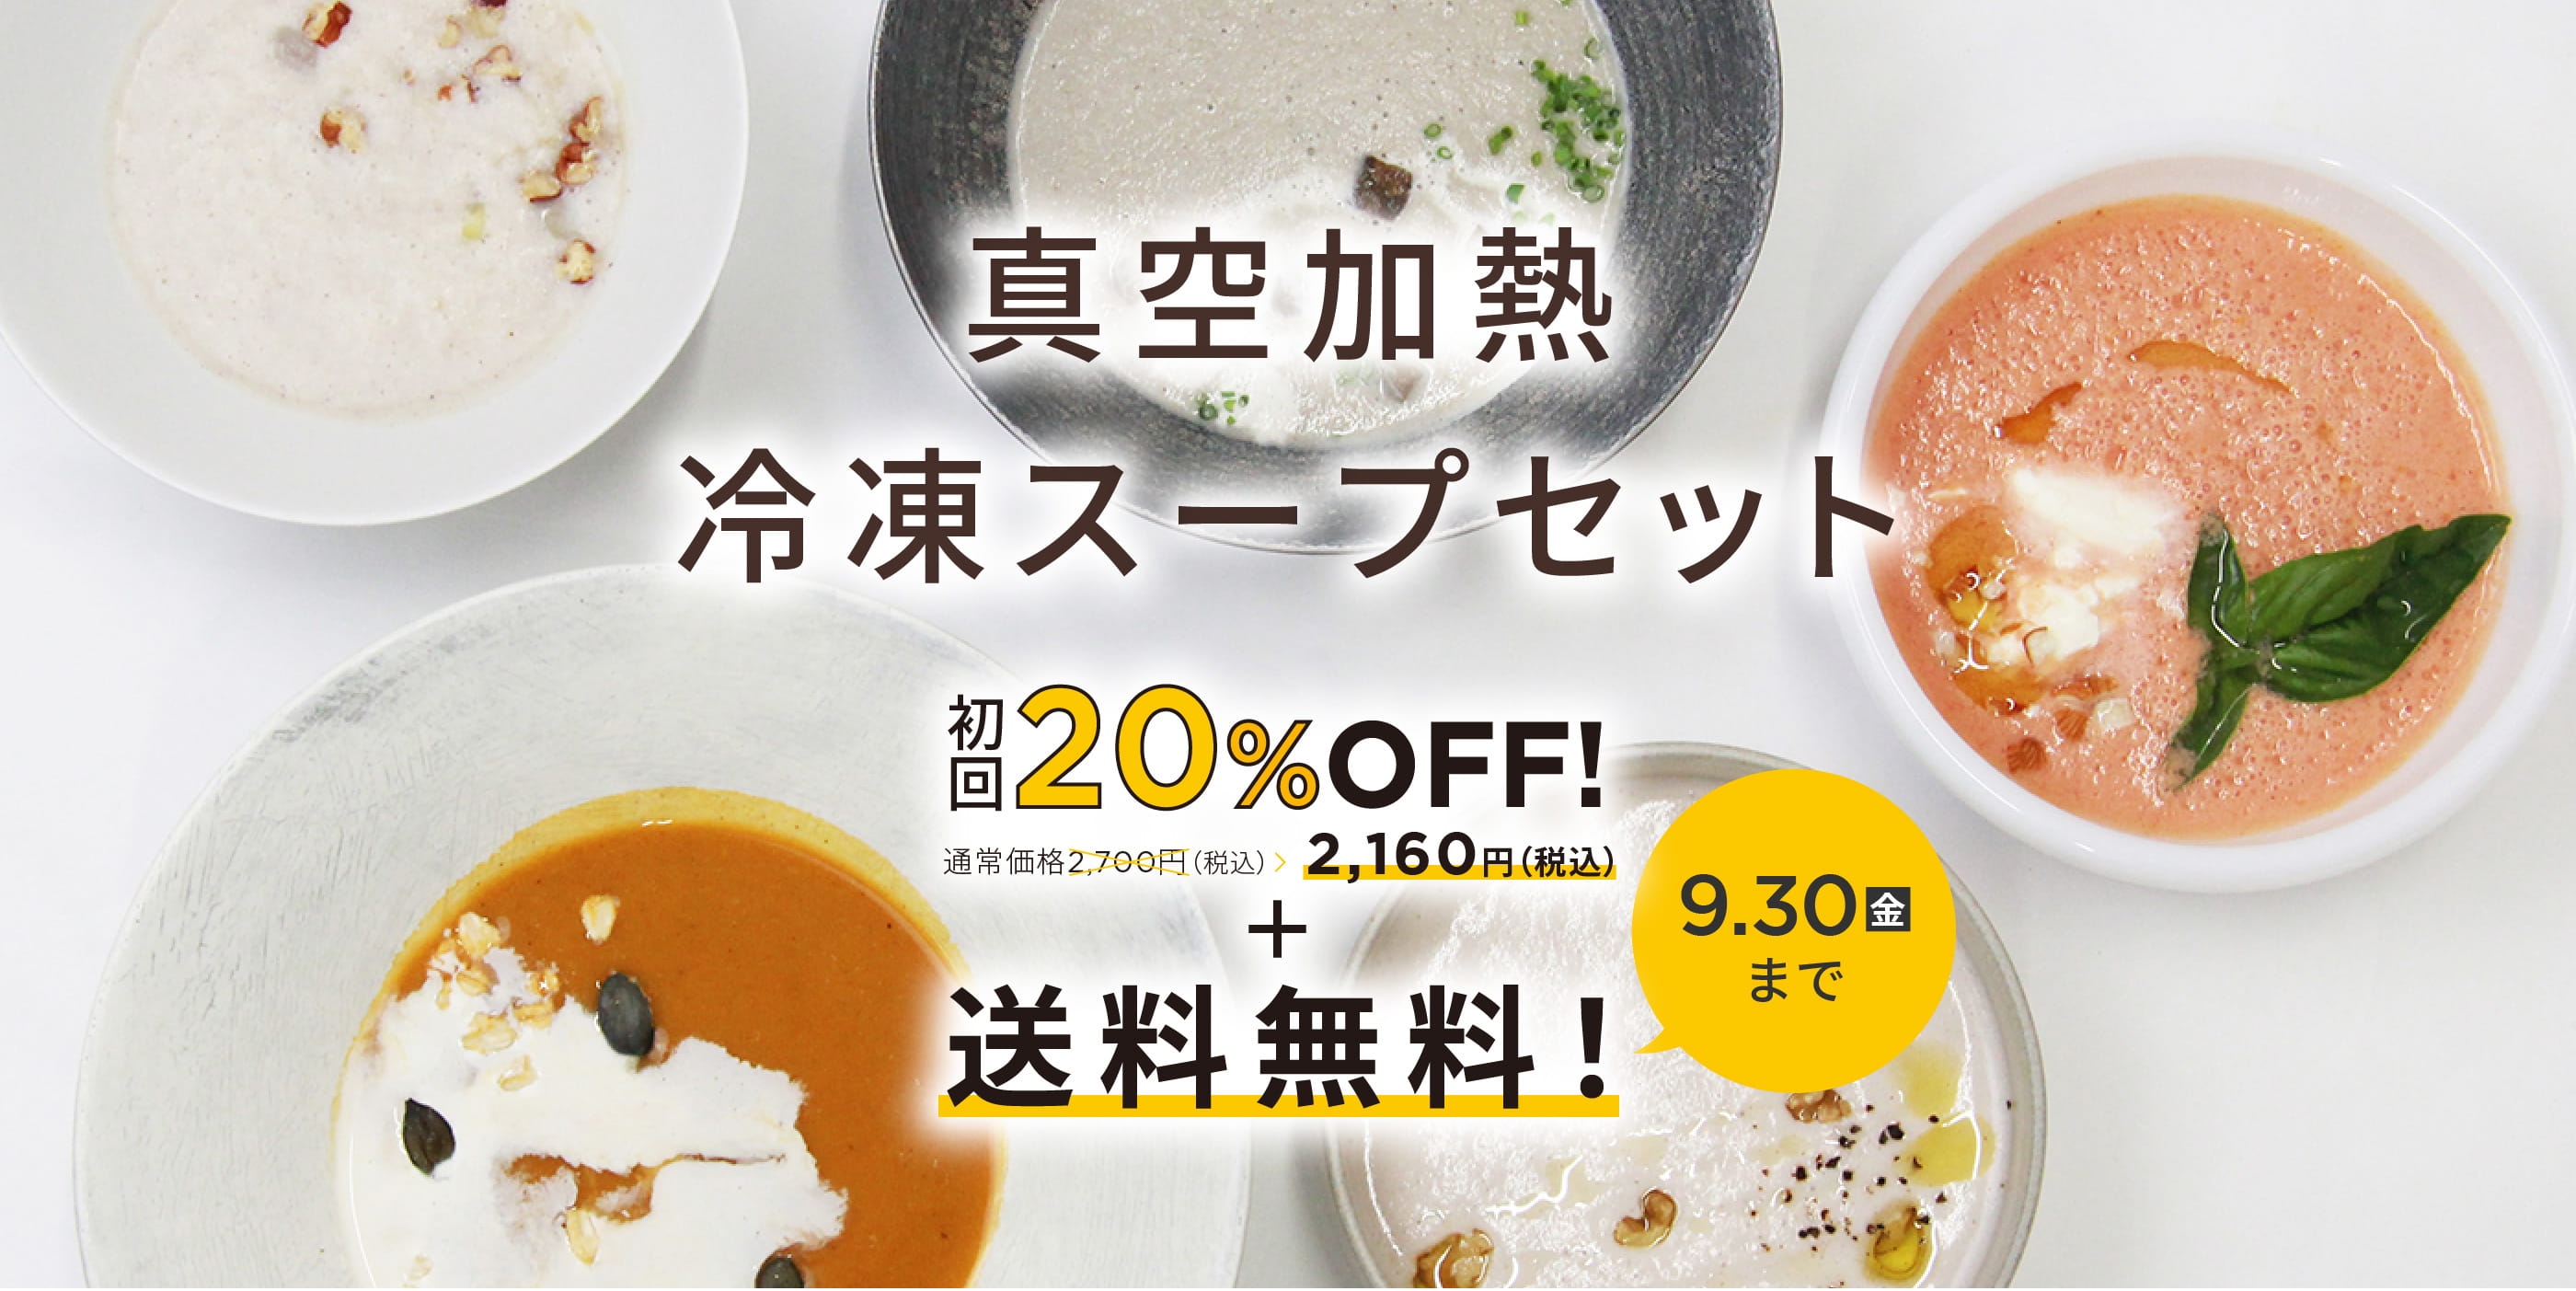 真空加熱冷凍スープセット 通常価格2,700円（税込） 初回20%OFF 2,160円（税込）＋送料無料！ 9.30(金)まで